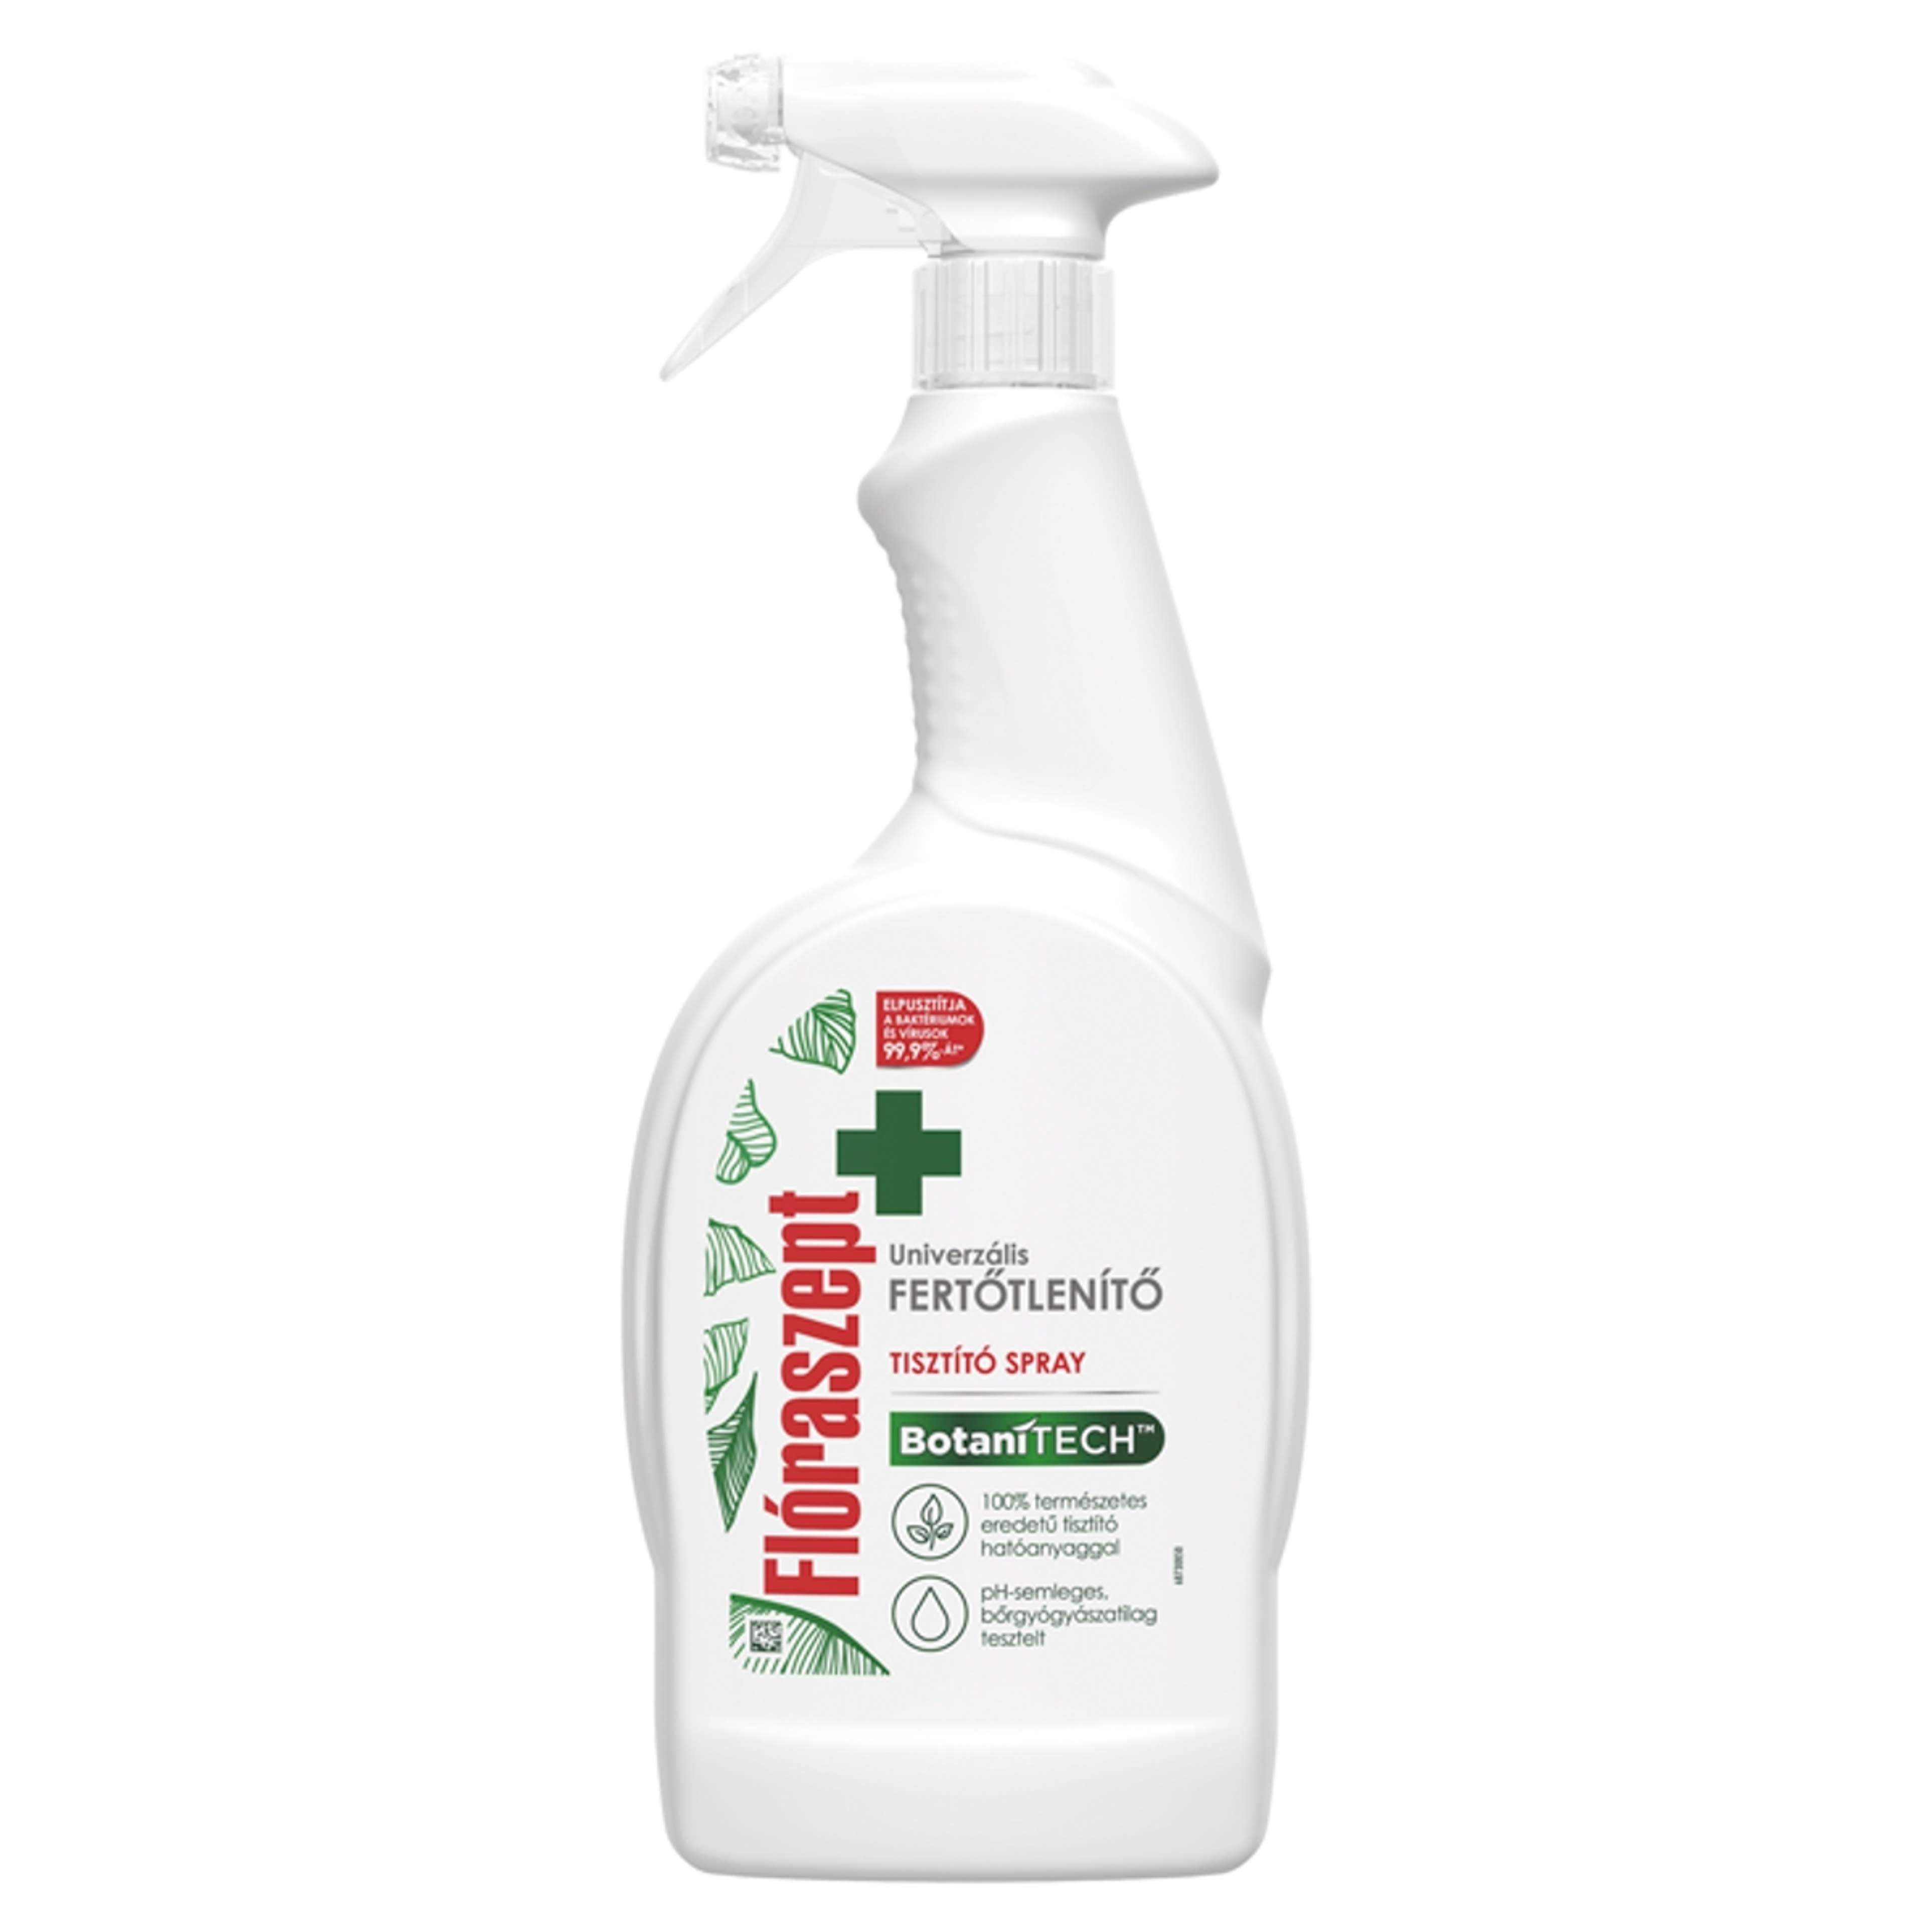 Flóraszept Botanitech univerzális fertőtlenítő spray - 700 ml-1